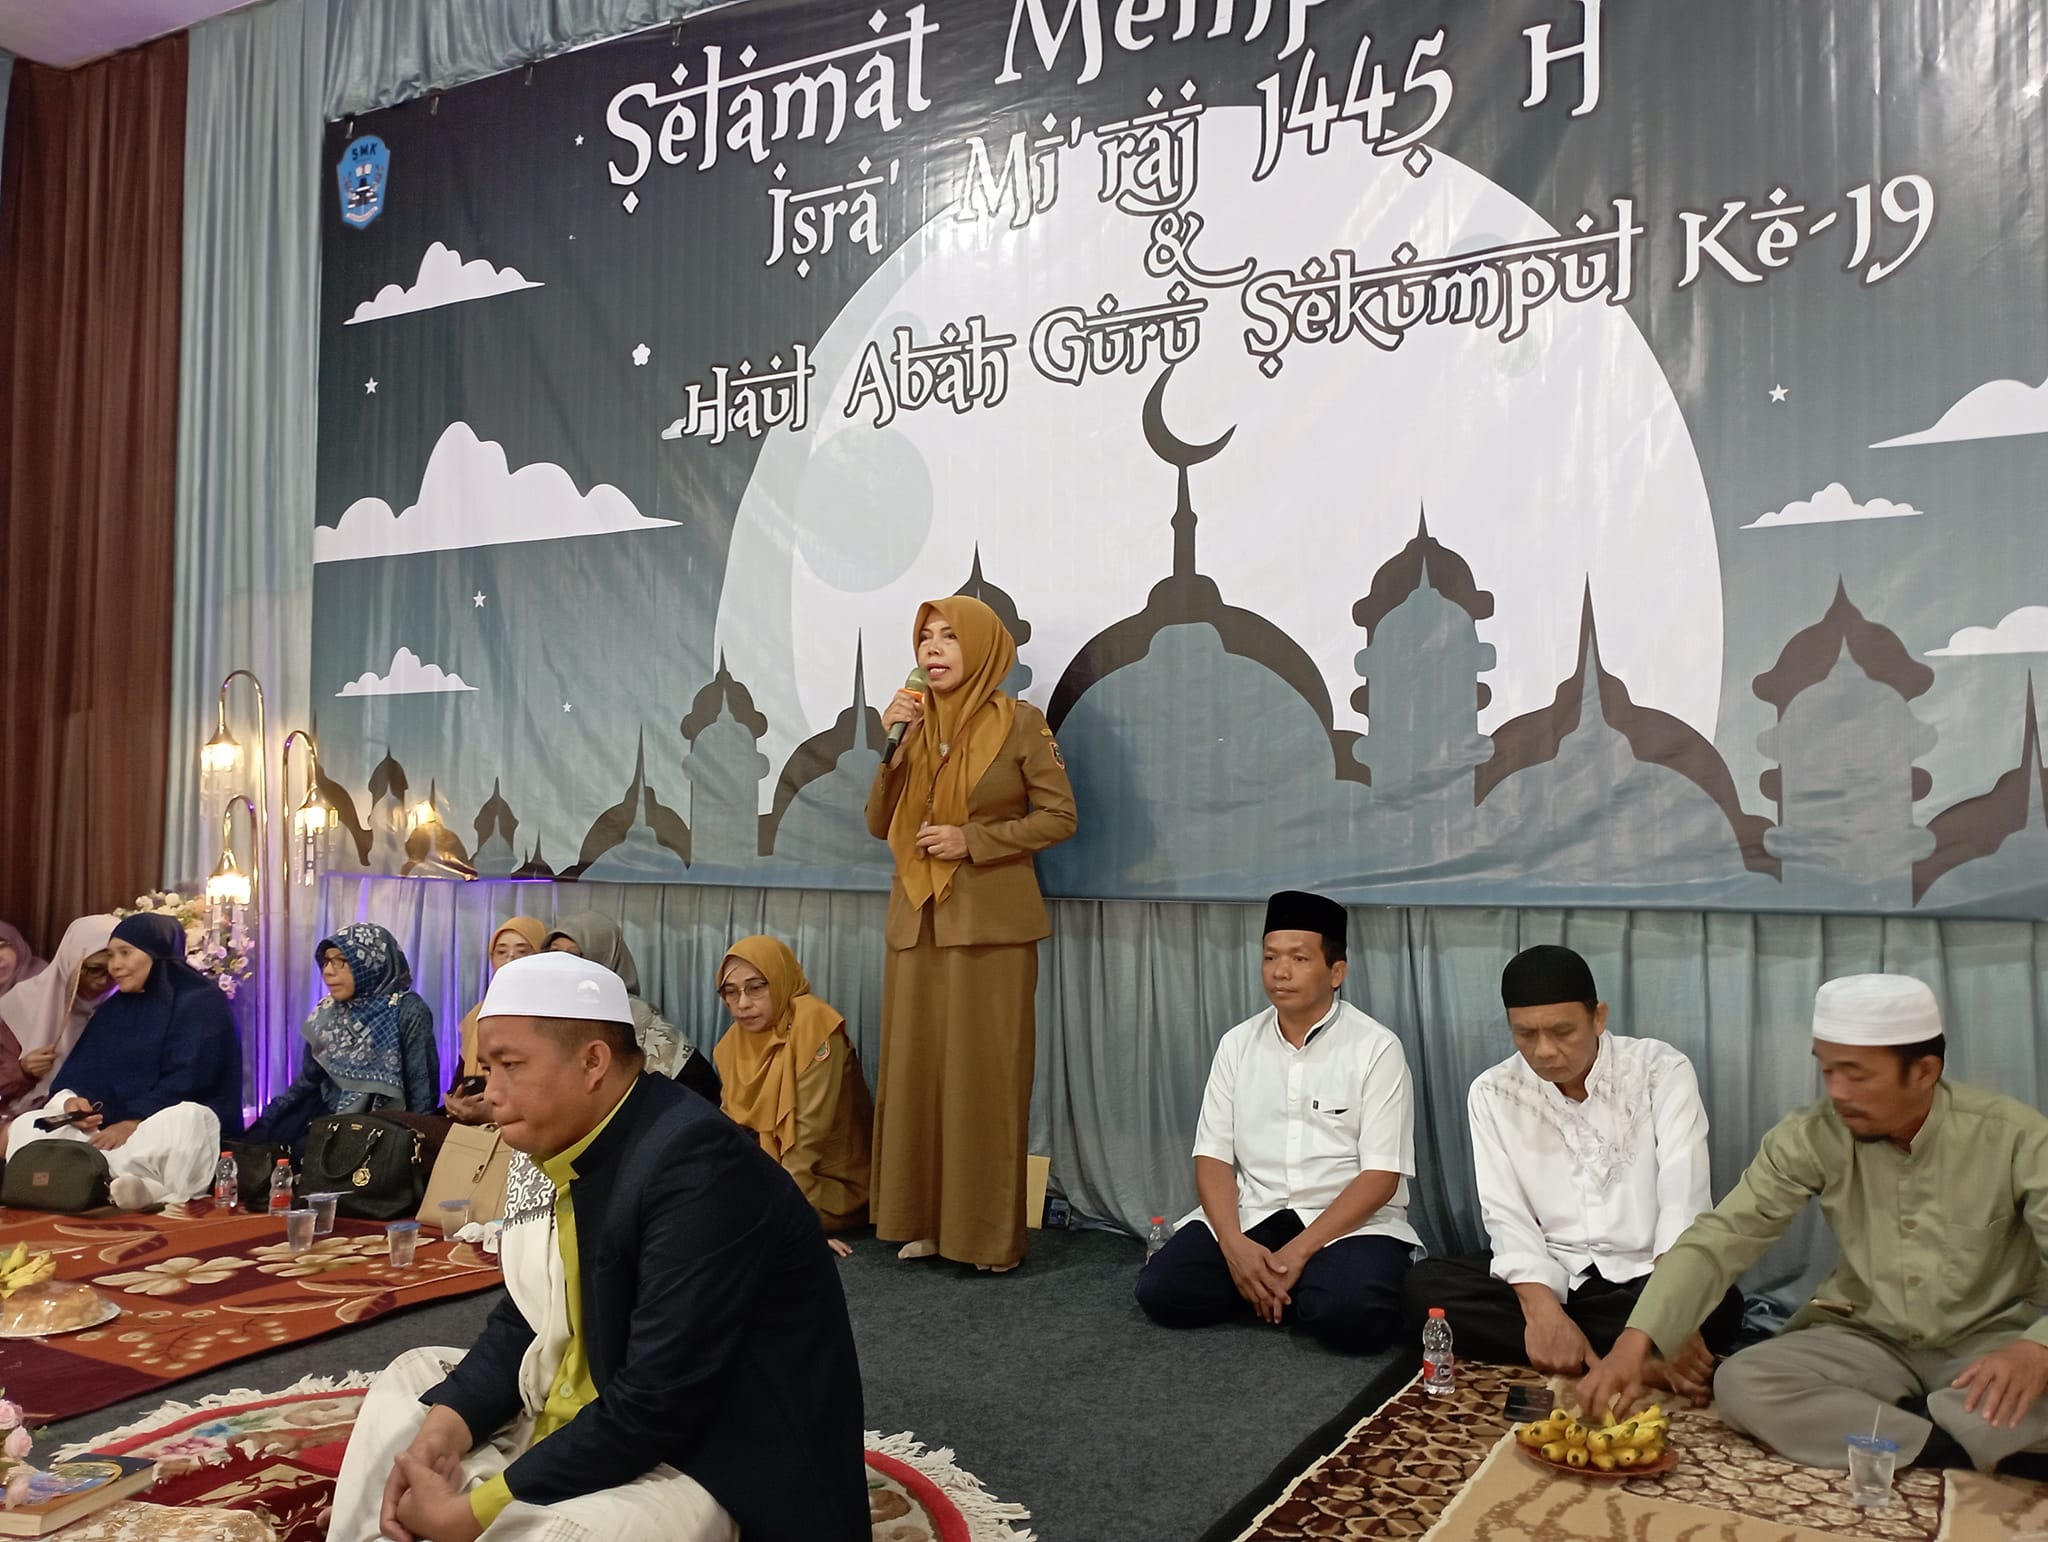 Peringatan Isra Mi’raj 1445 H dan Haul Abah Guru Sekumpul Ke 19 Di SMKN 1 Banjarbaru.